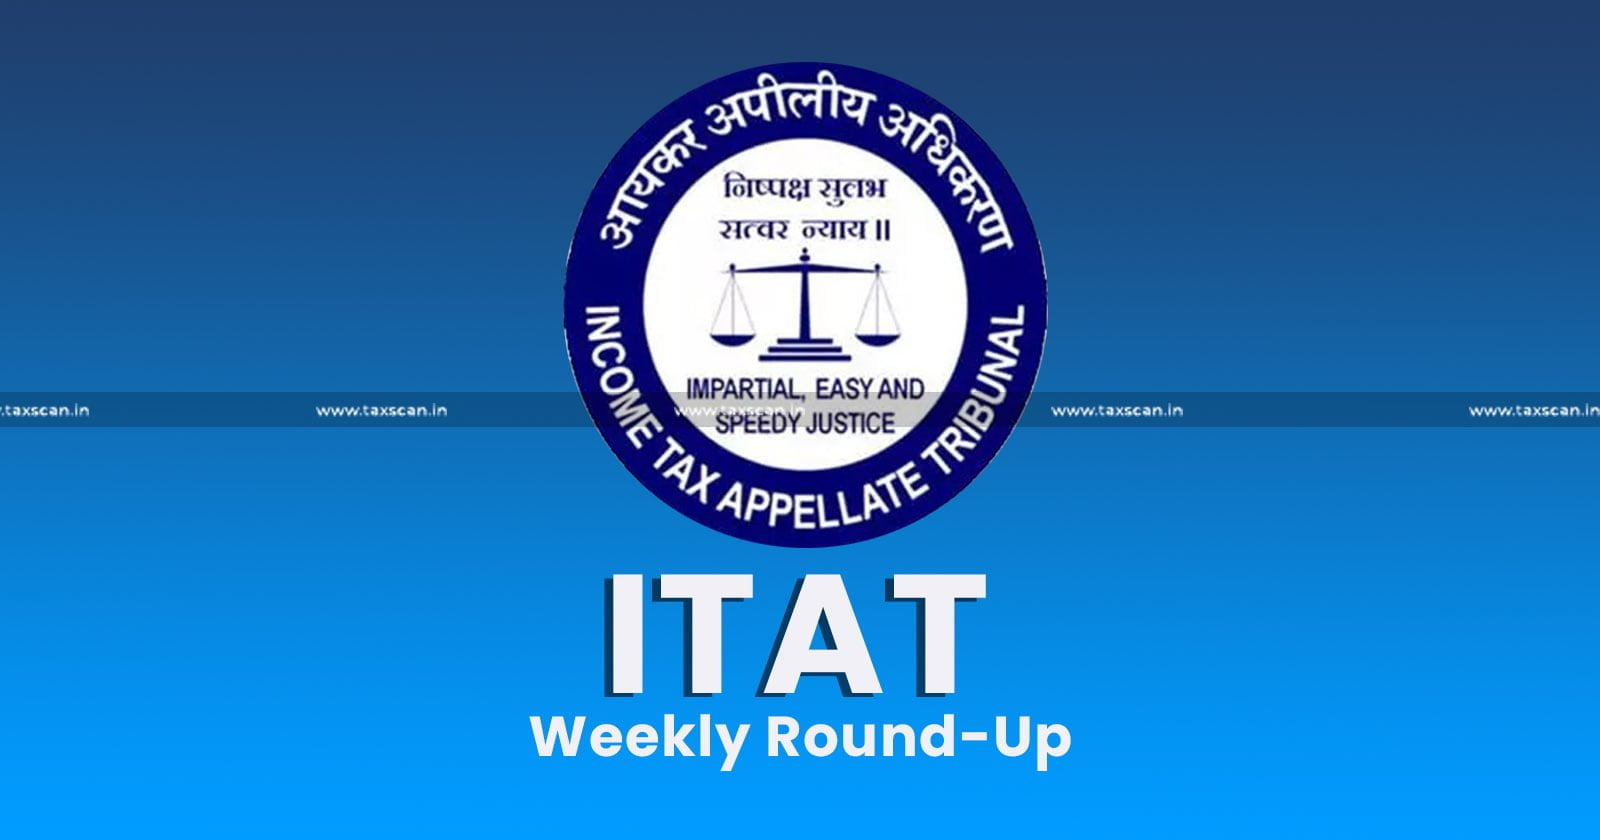 ITAT Weekly Round-Up - ITAT- Weekly Round-Up - taxscan